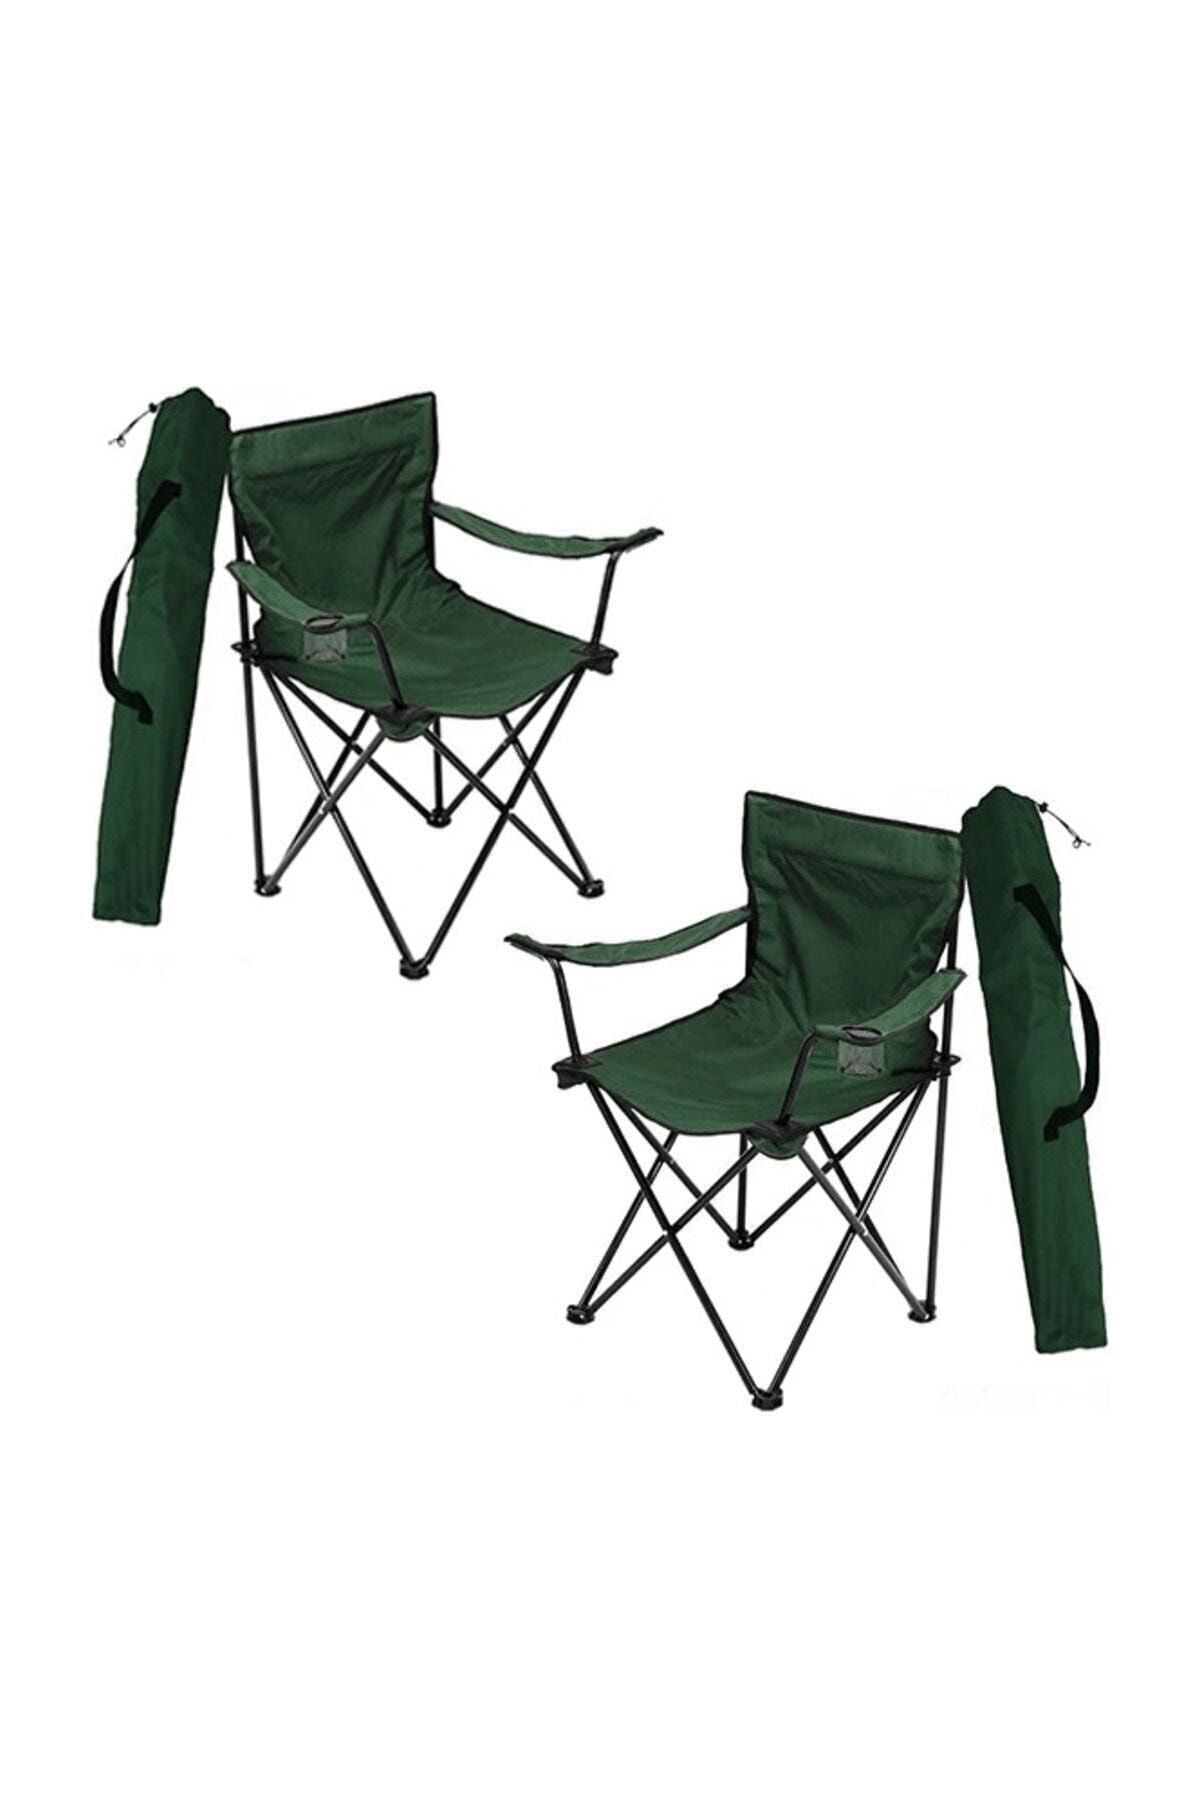 2 Adet Kamp Sandalyesi Katlanır Sandalye Bahçe Koltuğu Piknik Plaj Balkon Sandalyesi Yeşil